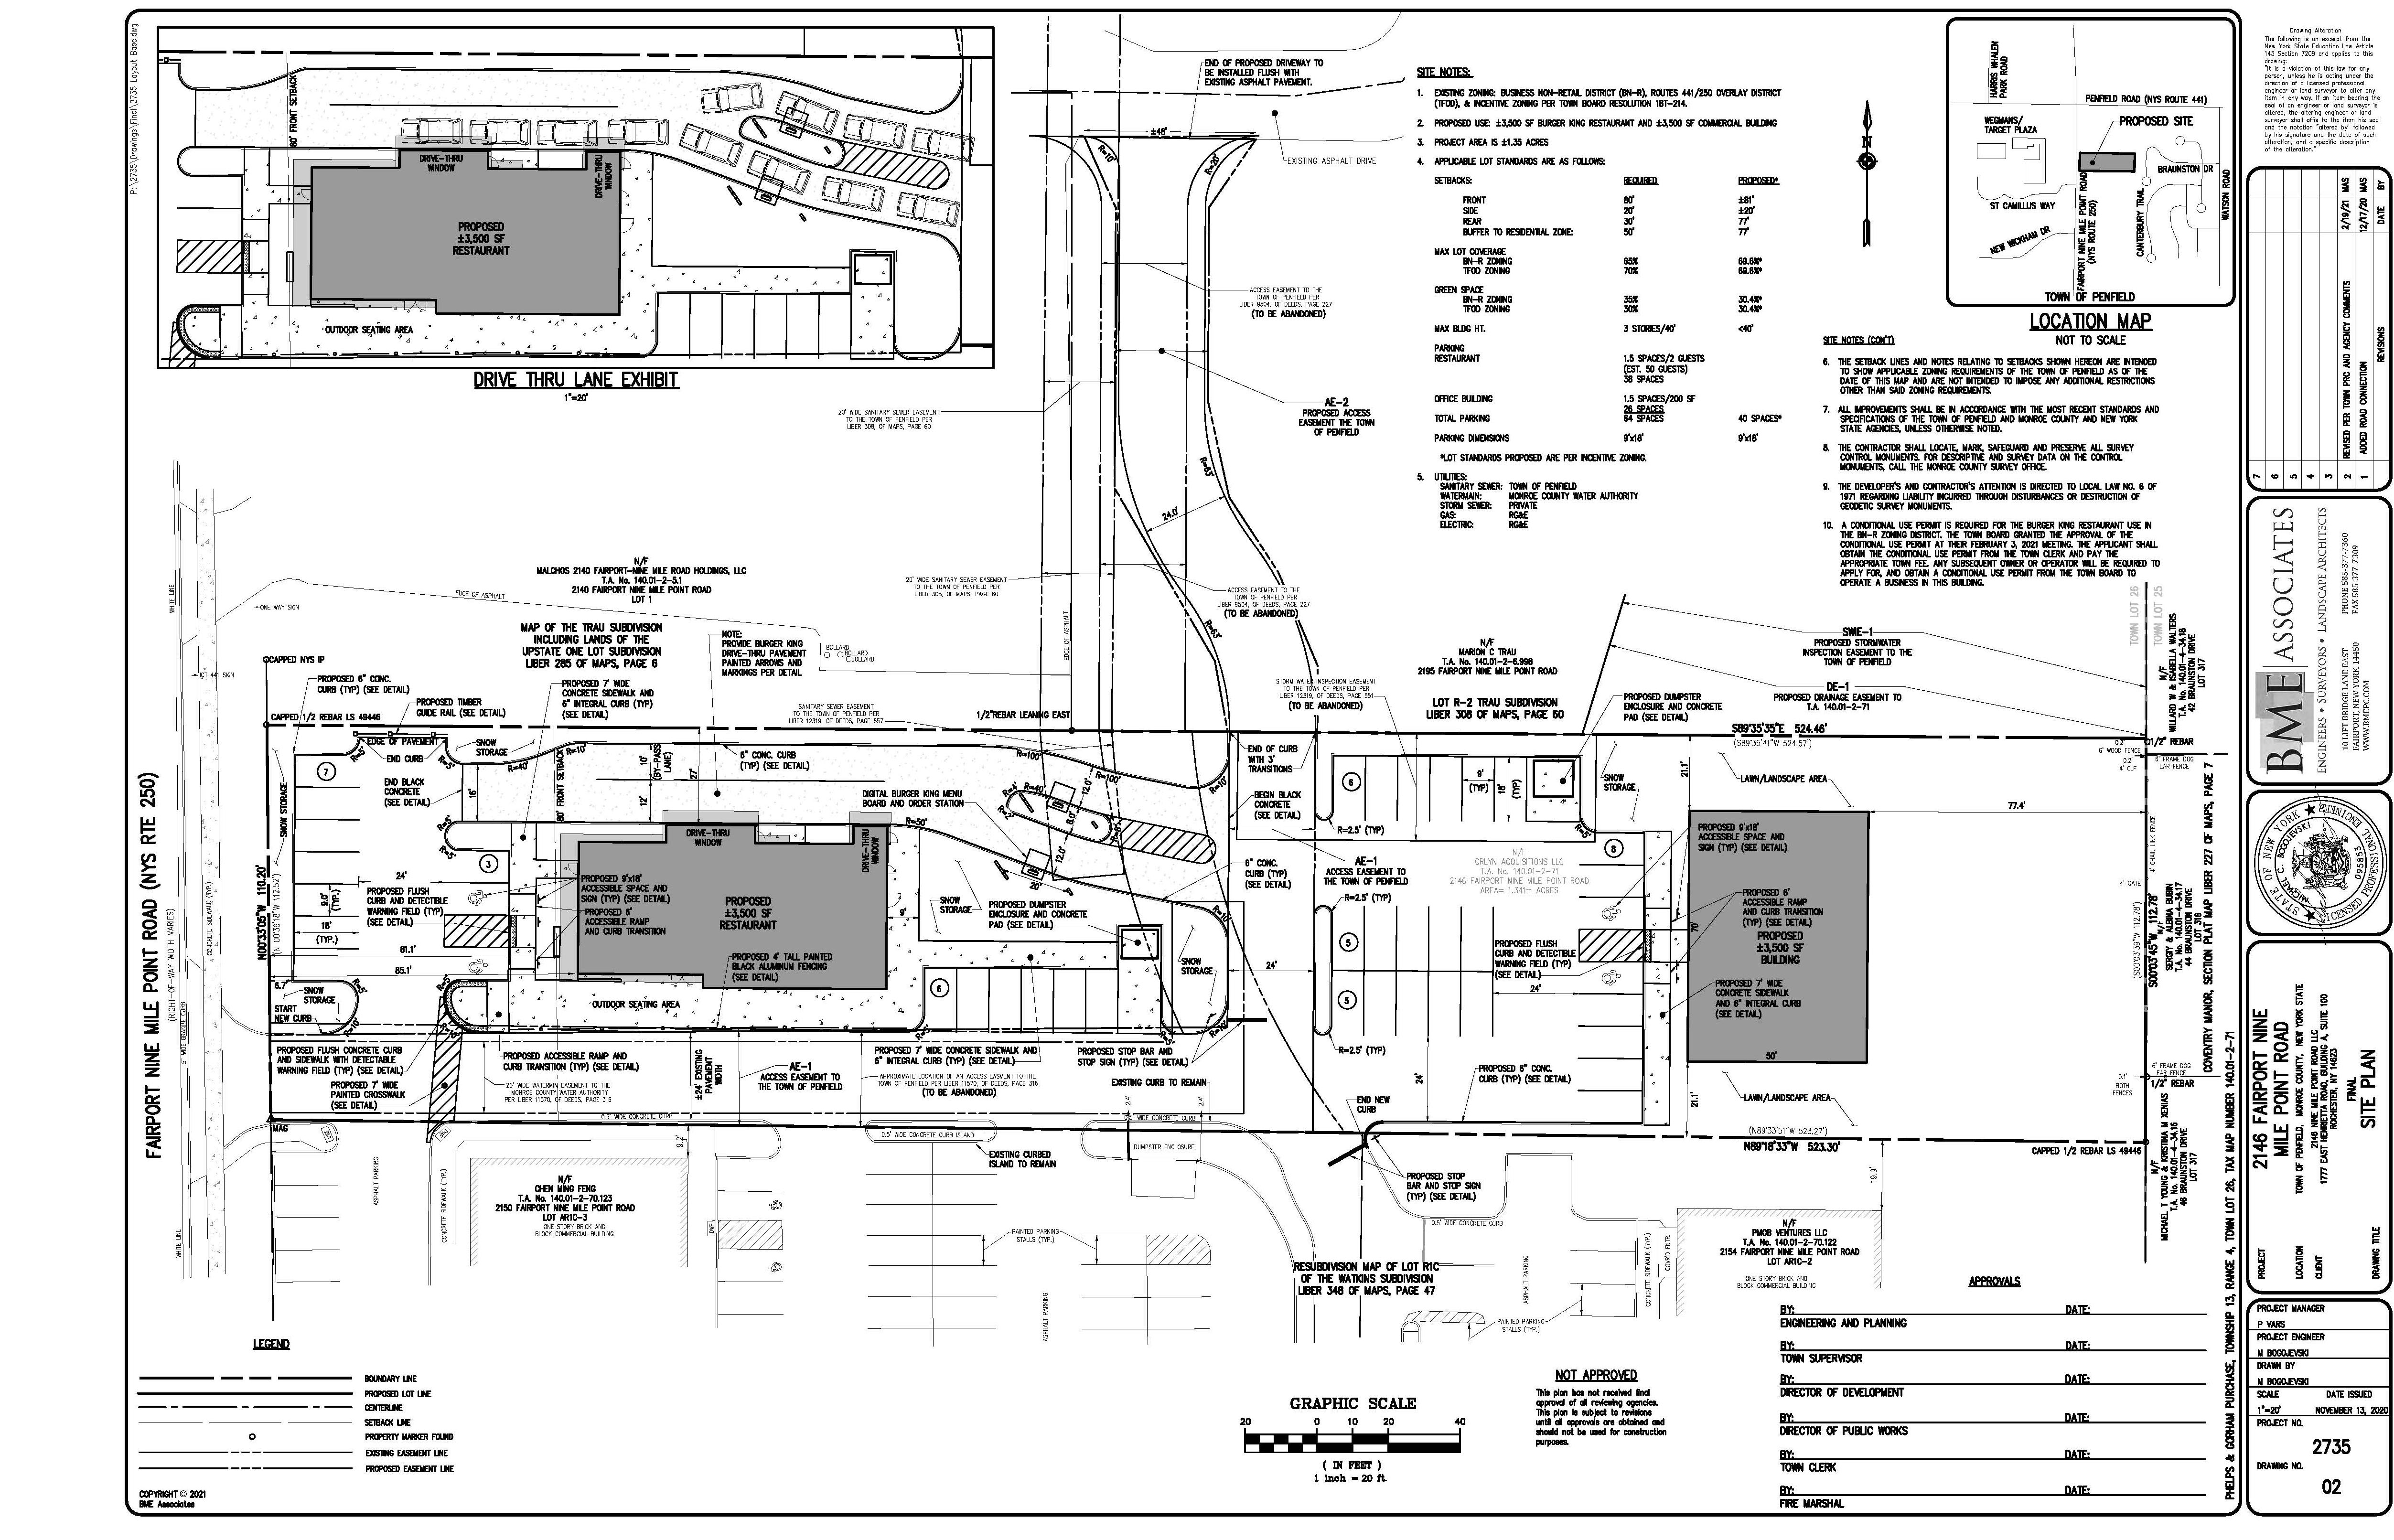 BK - 2146 Fairport Nine Mile Point Road - Site Plan - Copy